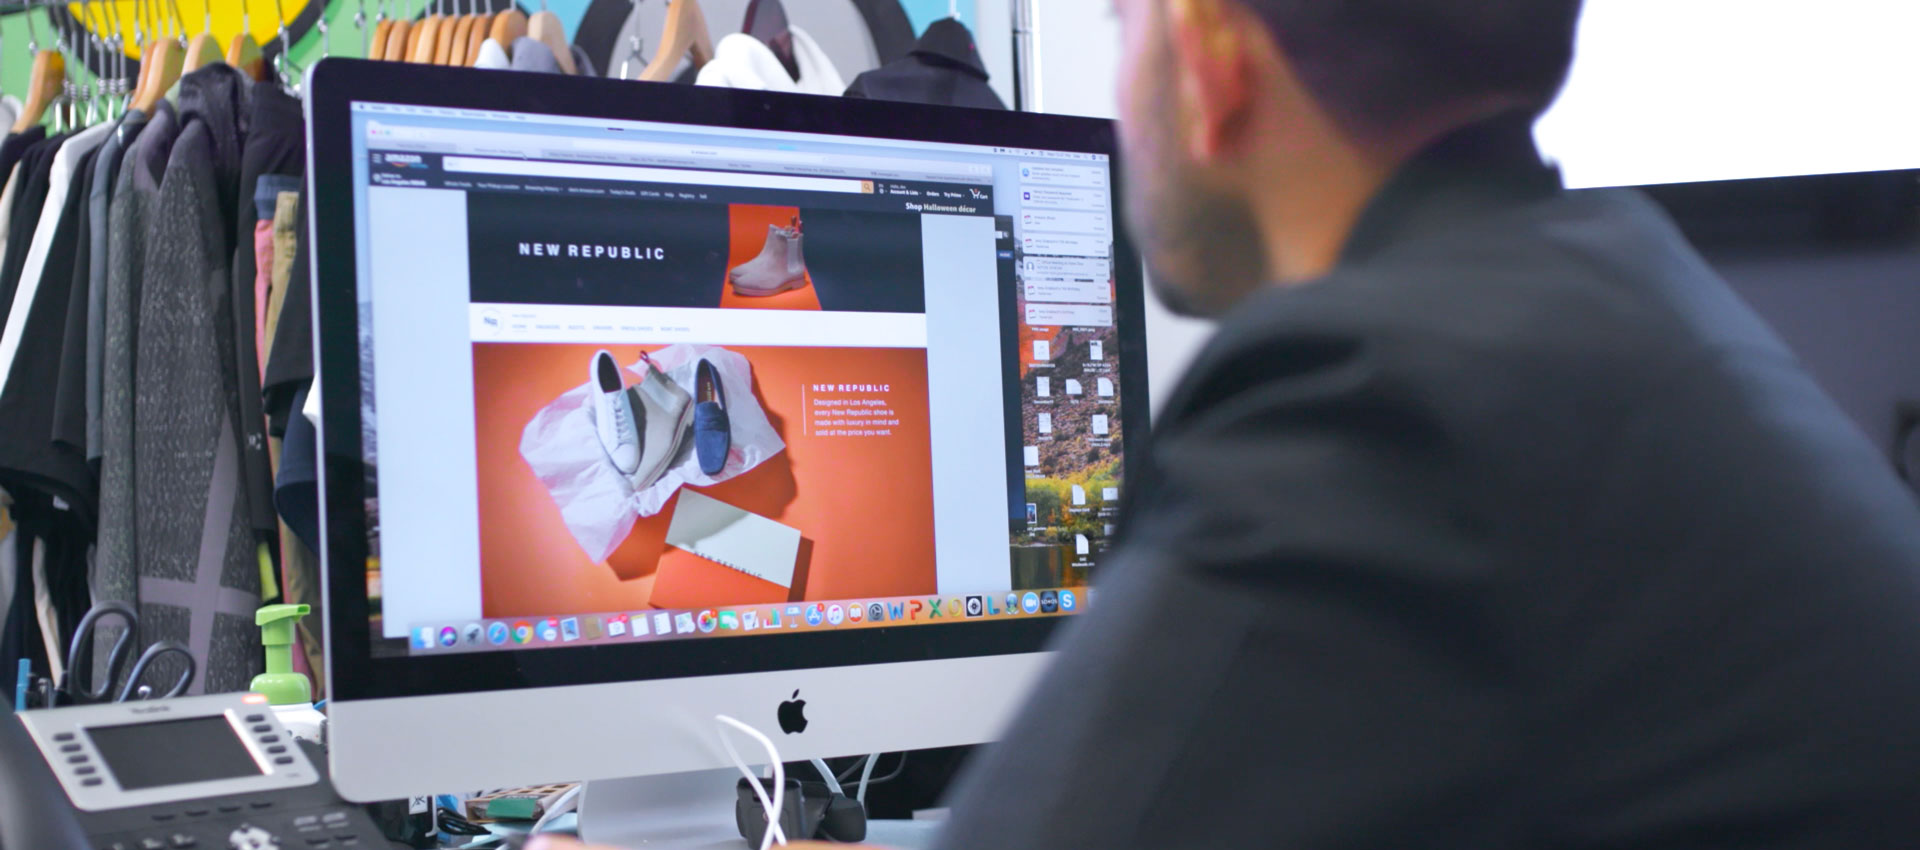 Ein Mann blickt auf einen Computerbildschirm, auf dem ein Online-Shop bei Amazon für die Modemarke New Republic angezeigt wird.